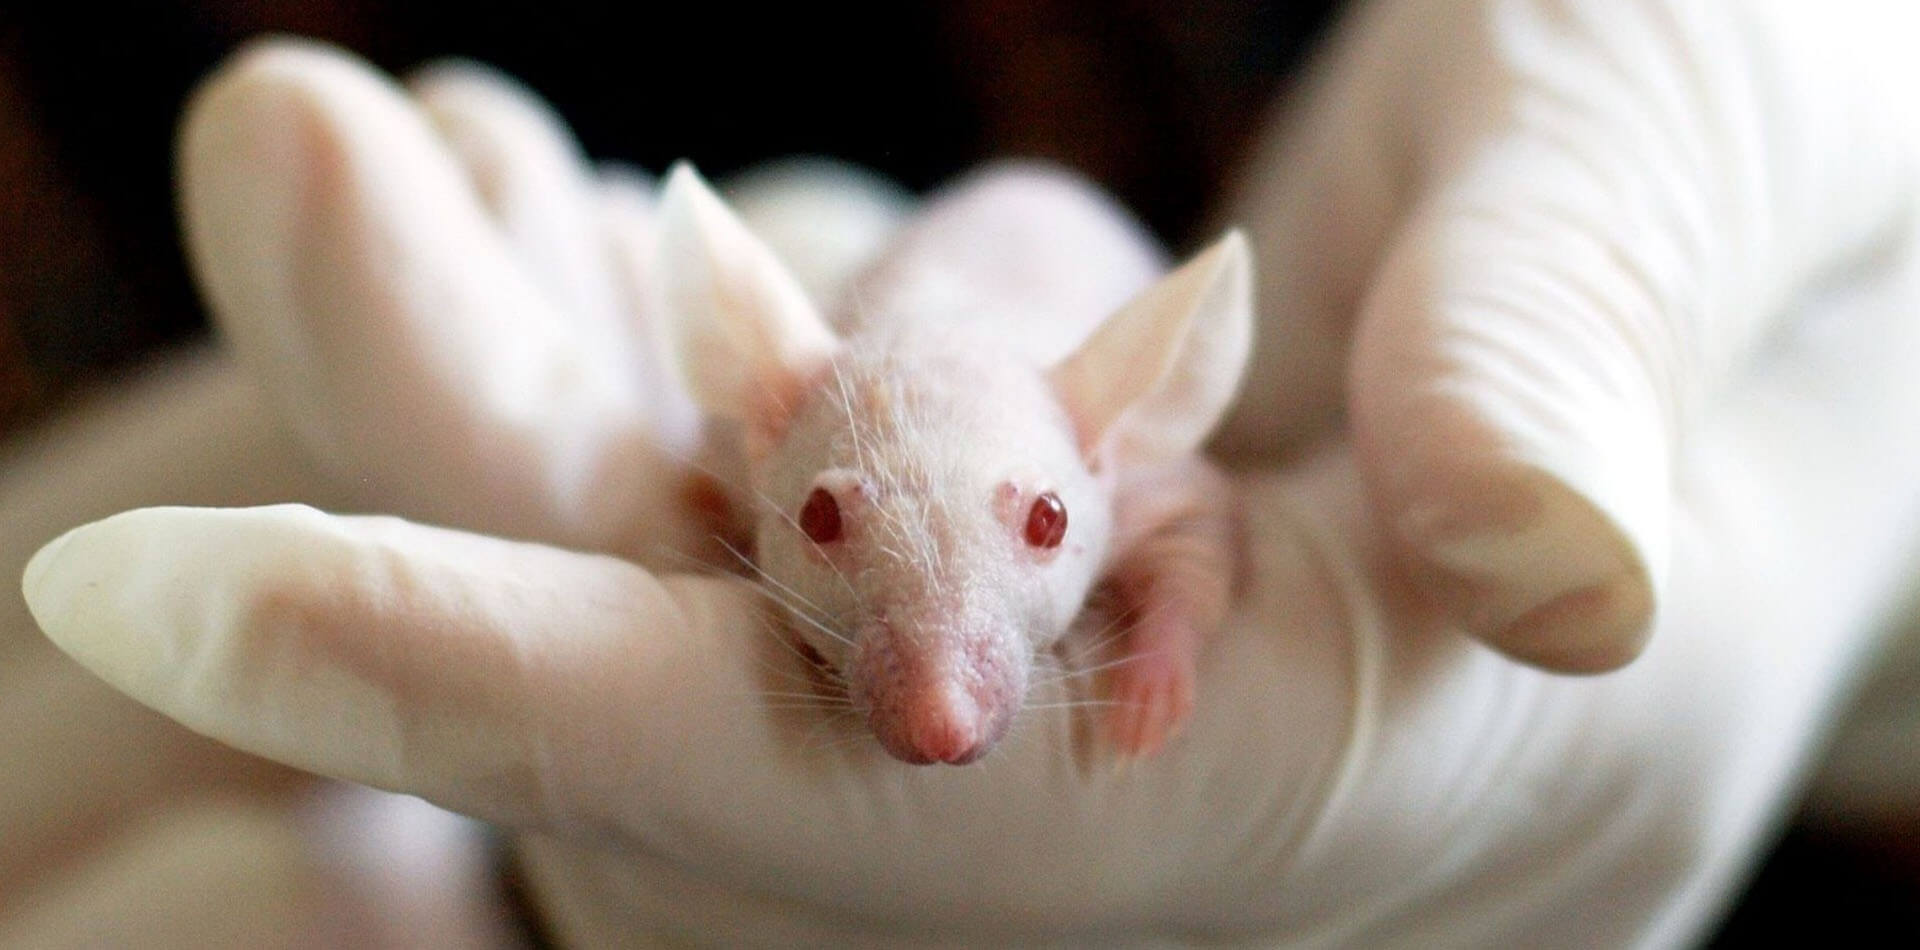 Weisse Mauss mit roten Augen wird in einer Hand gehalten.